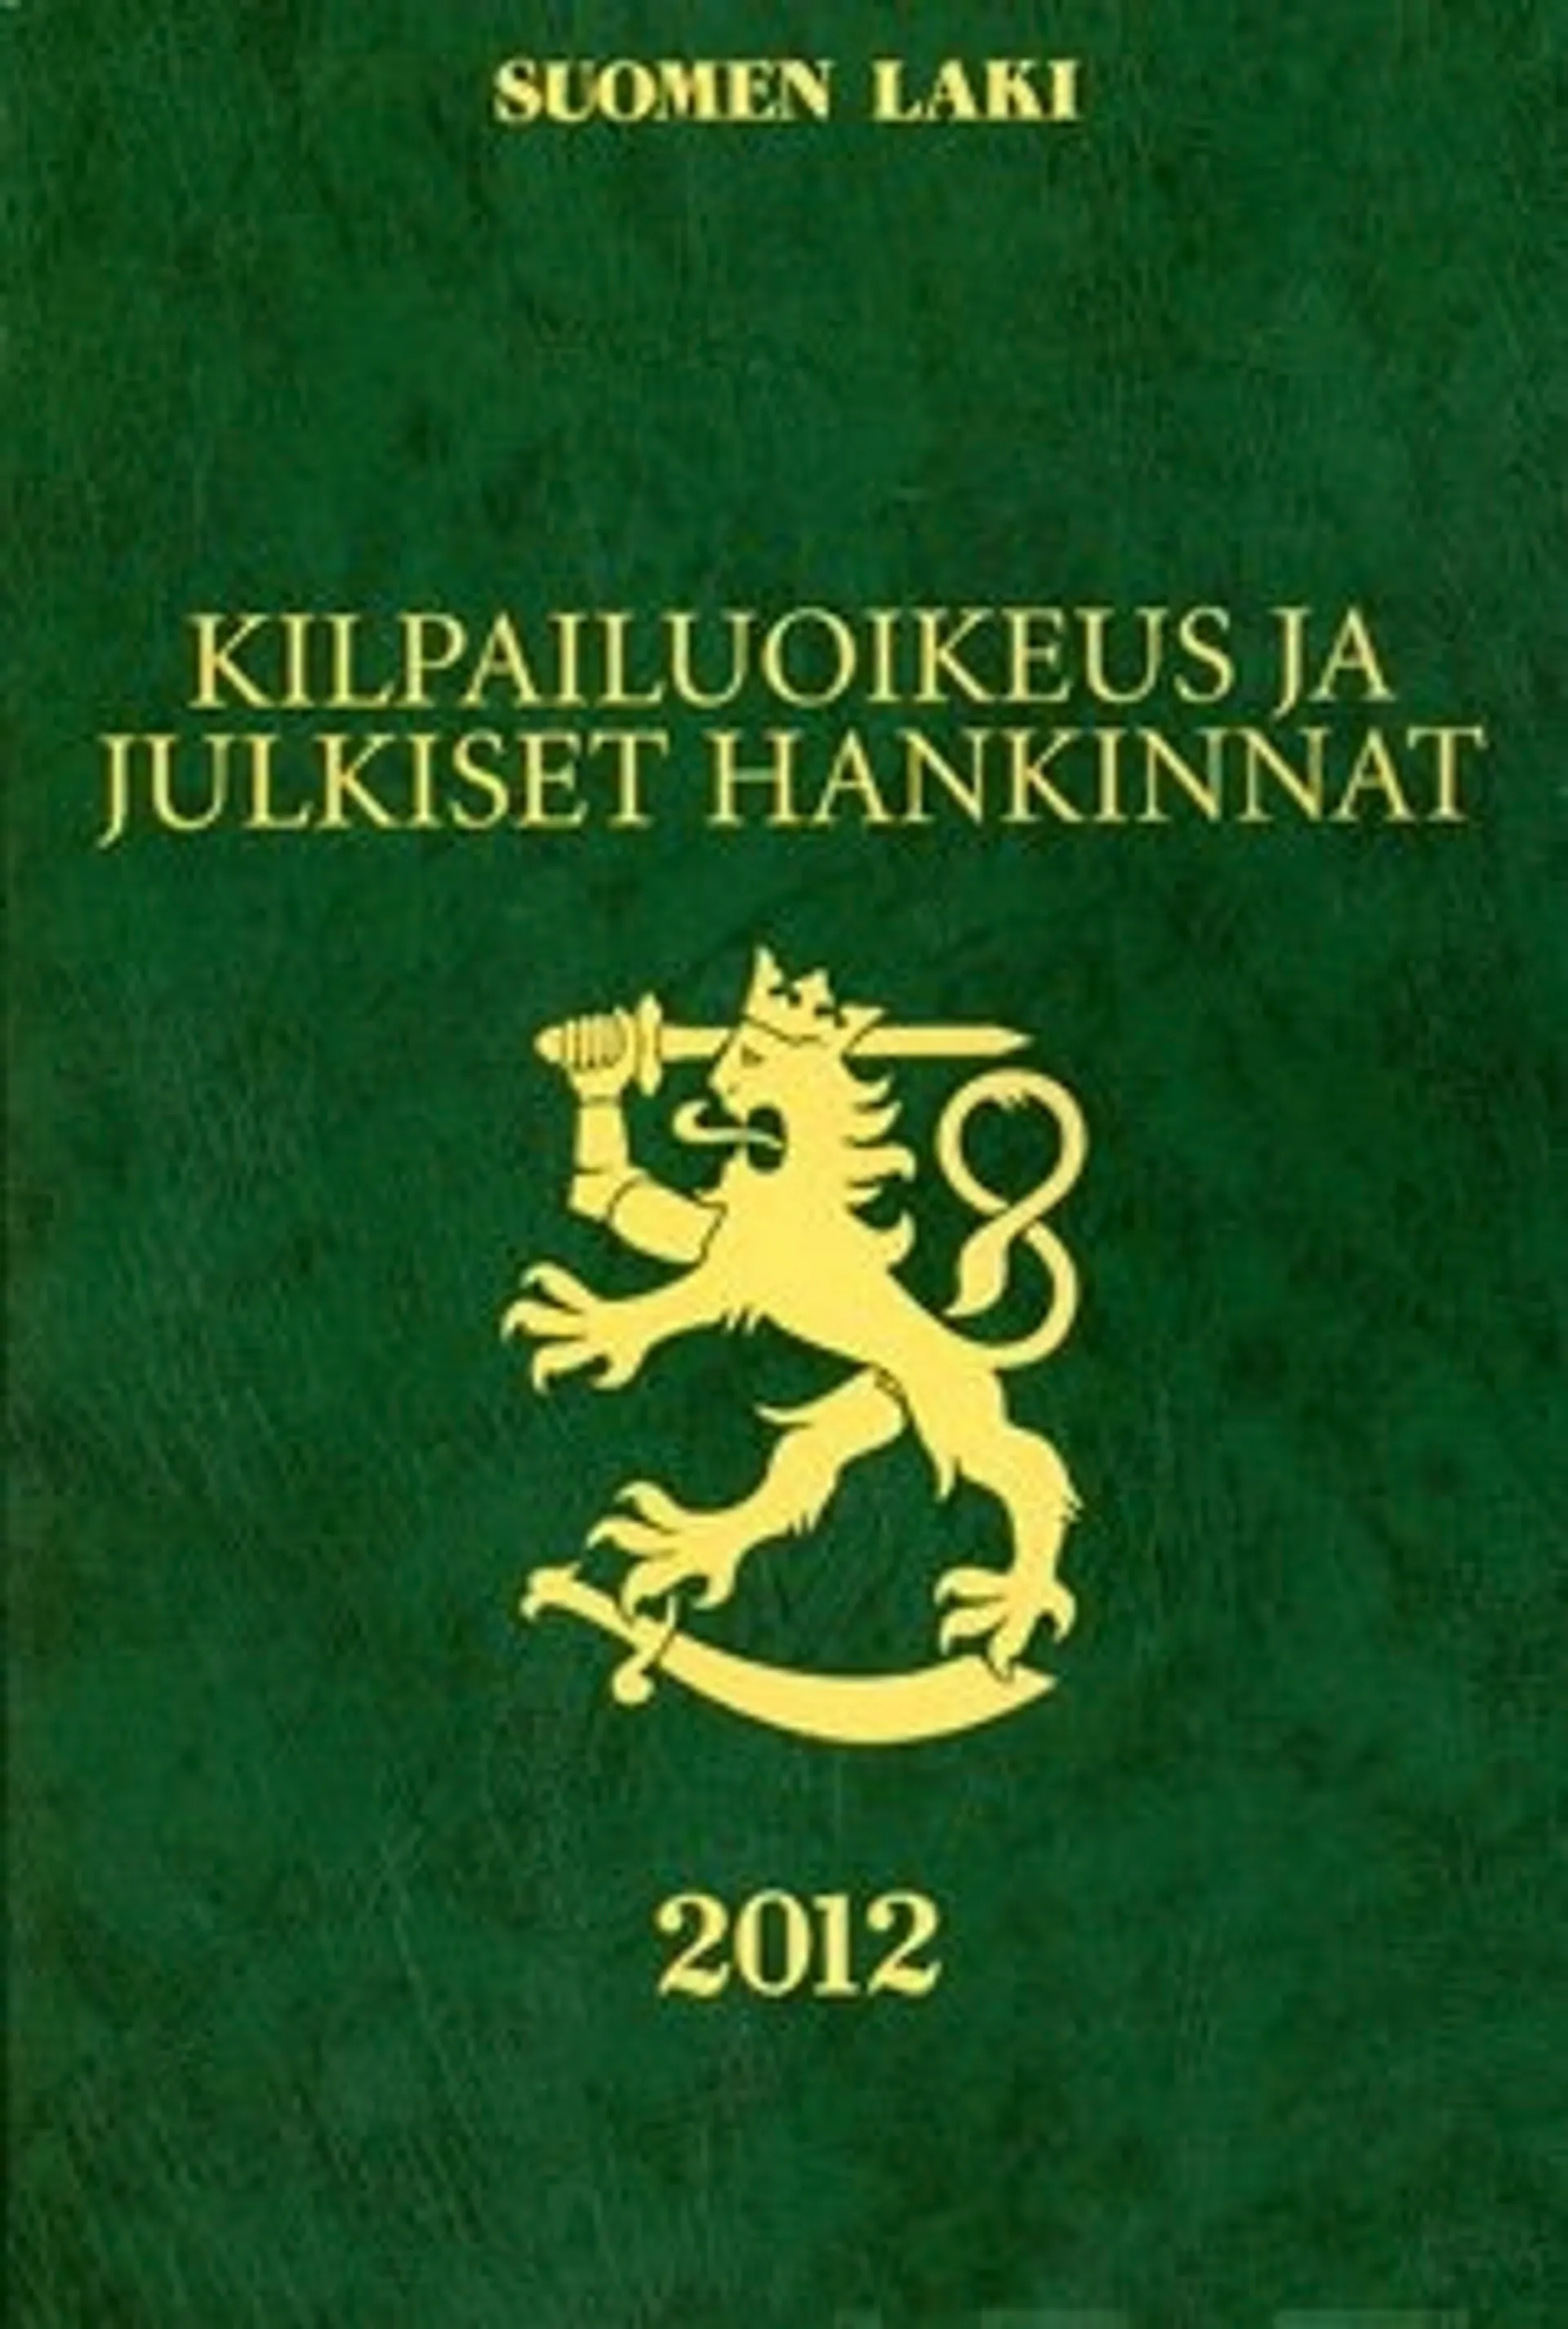 Kilpailuoikeus ja julkiset hankinnat 2012